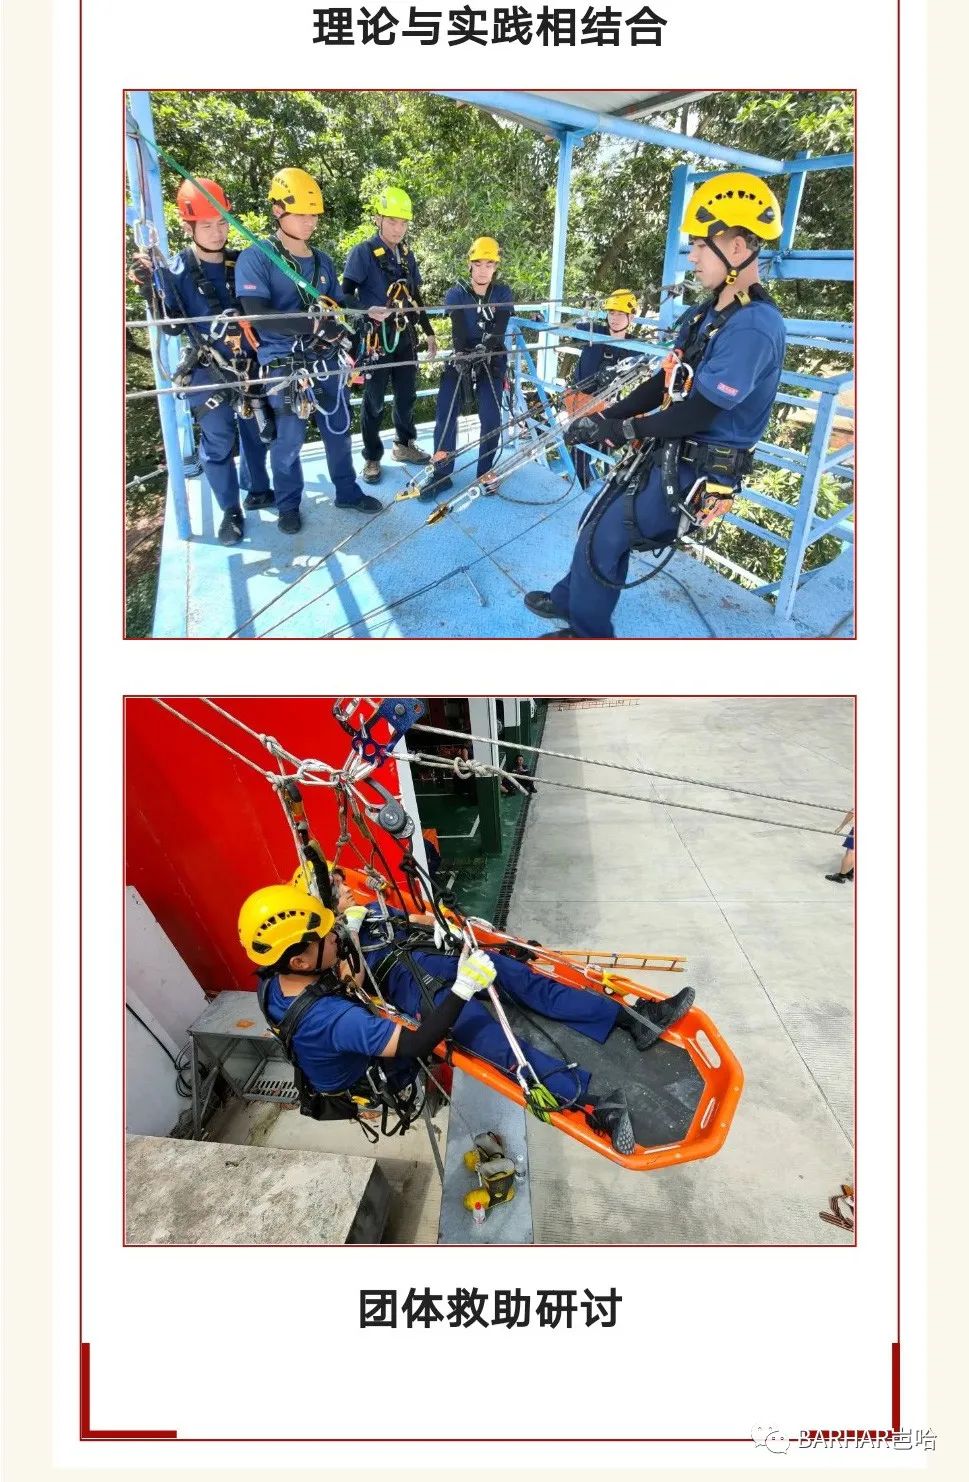 fire rescue, rope rescue, rescue bag, stretcher, BARHAR, 岜哈